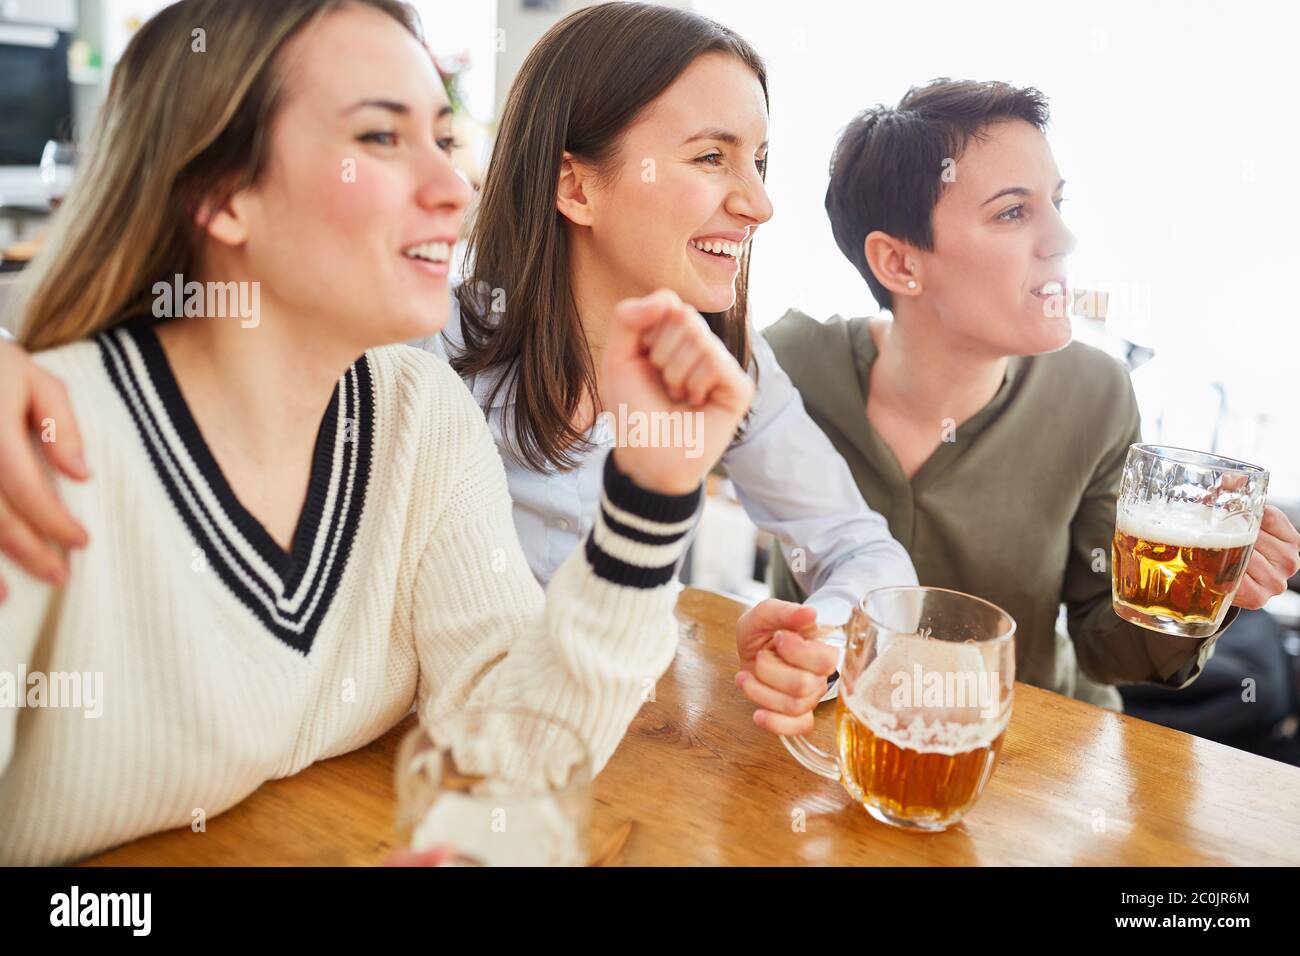 Groupe de femmes regardent le football, boivent de la bière et applaudissent leur équipe Banque D'Images